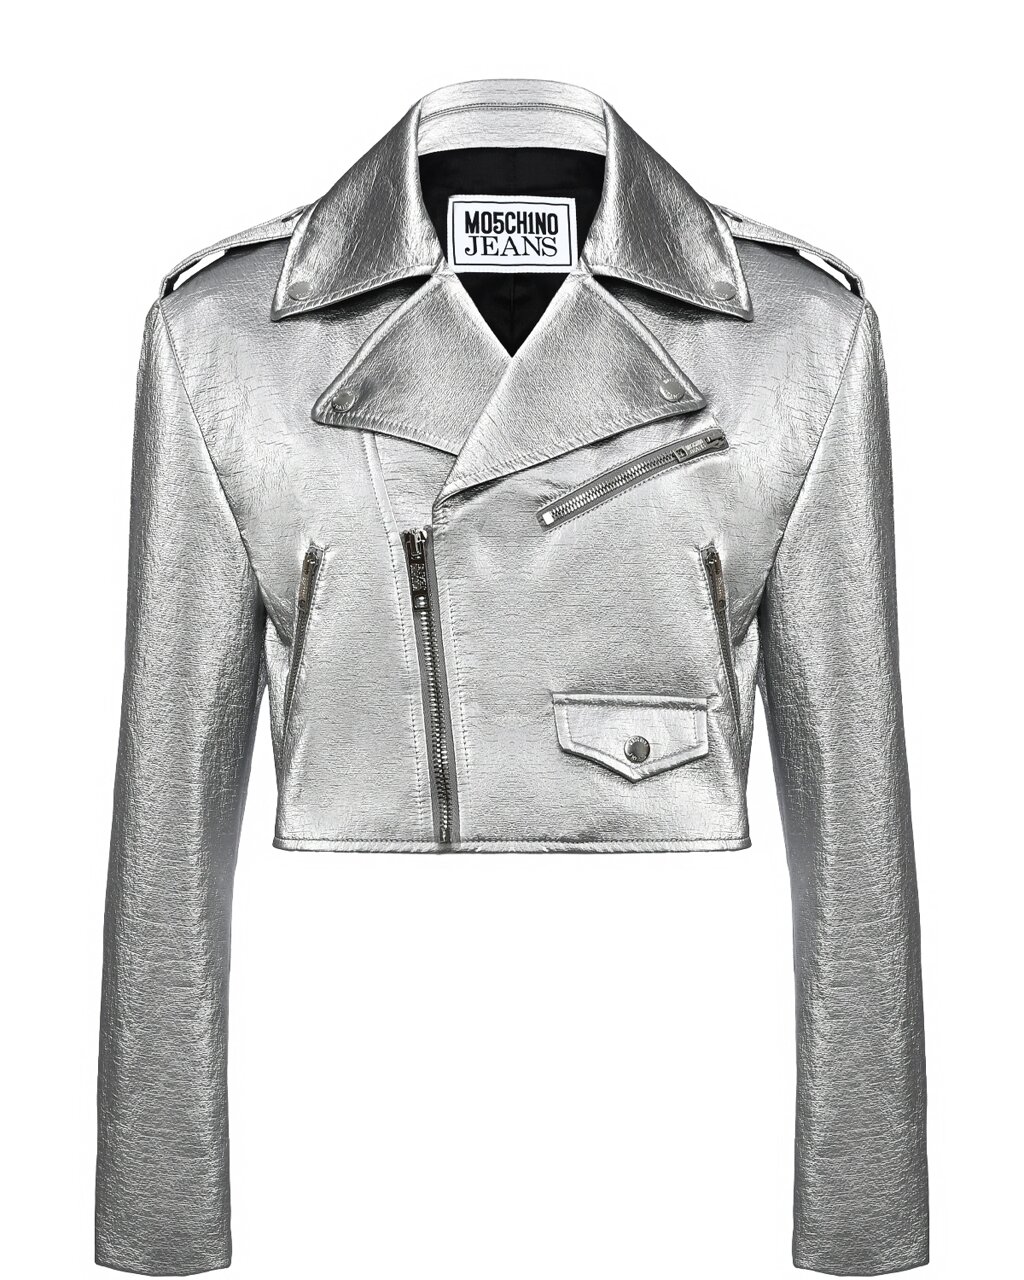 Укороченная куртка-косуха из эко-кожи Mo5ch1no Jeans от компании Admi - фото 1